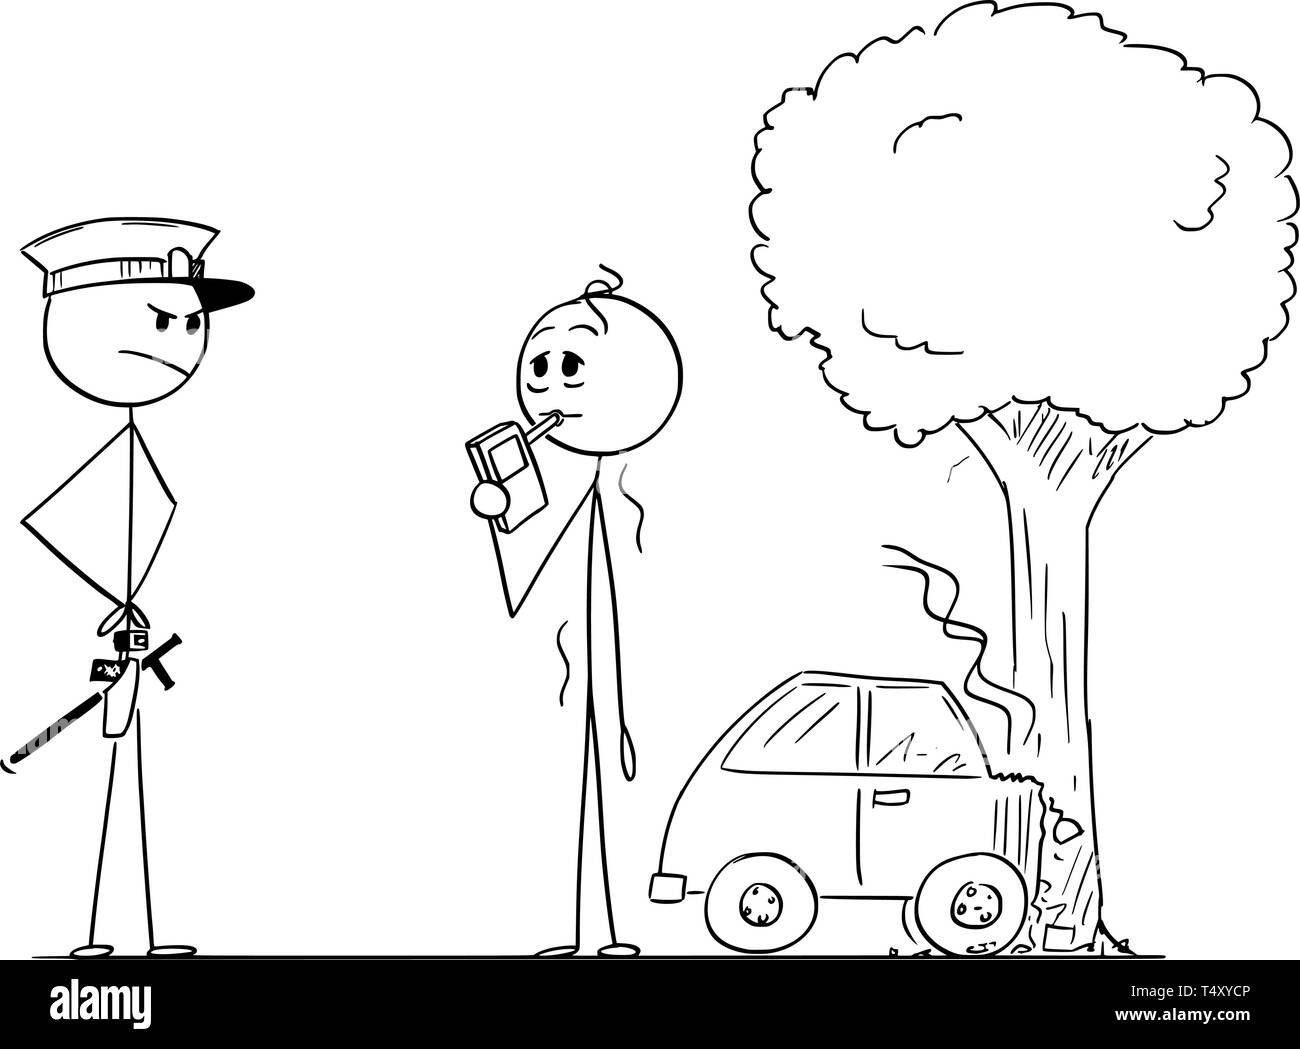 Cartoon stick figure dessin illustration conceptuelle de contrôler le niveau d'alcool de l'homme ivre ou pilote après accident de voiture. Illustration de Vecteur